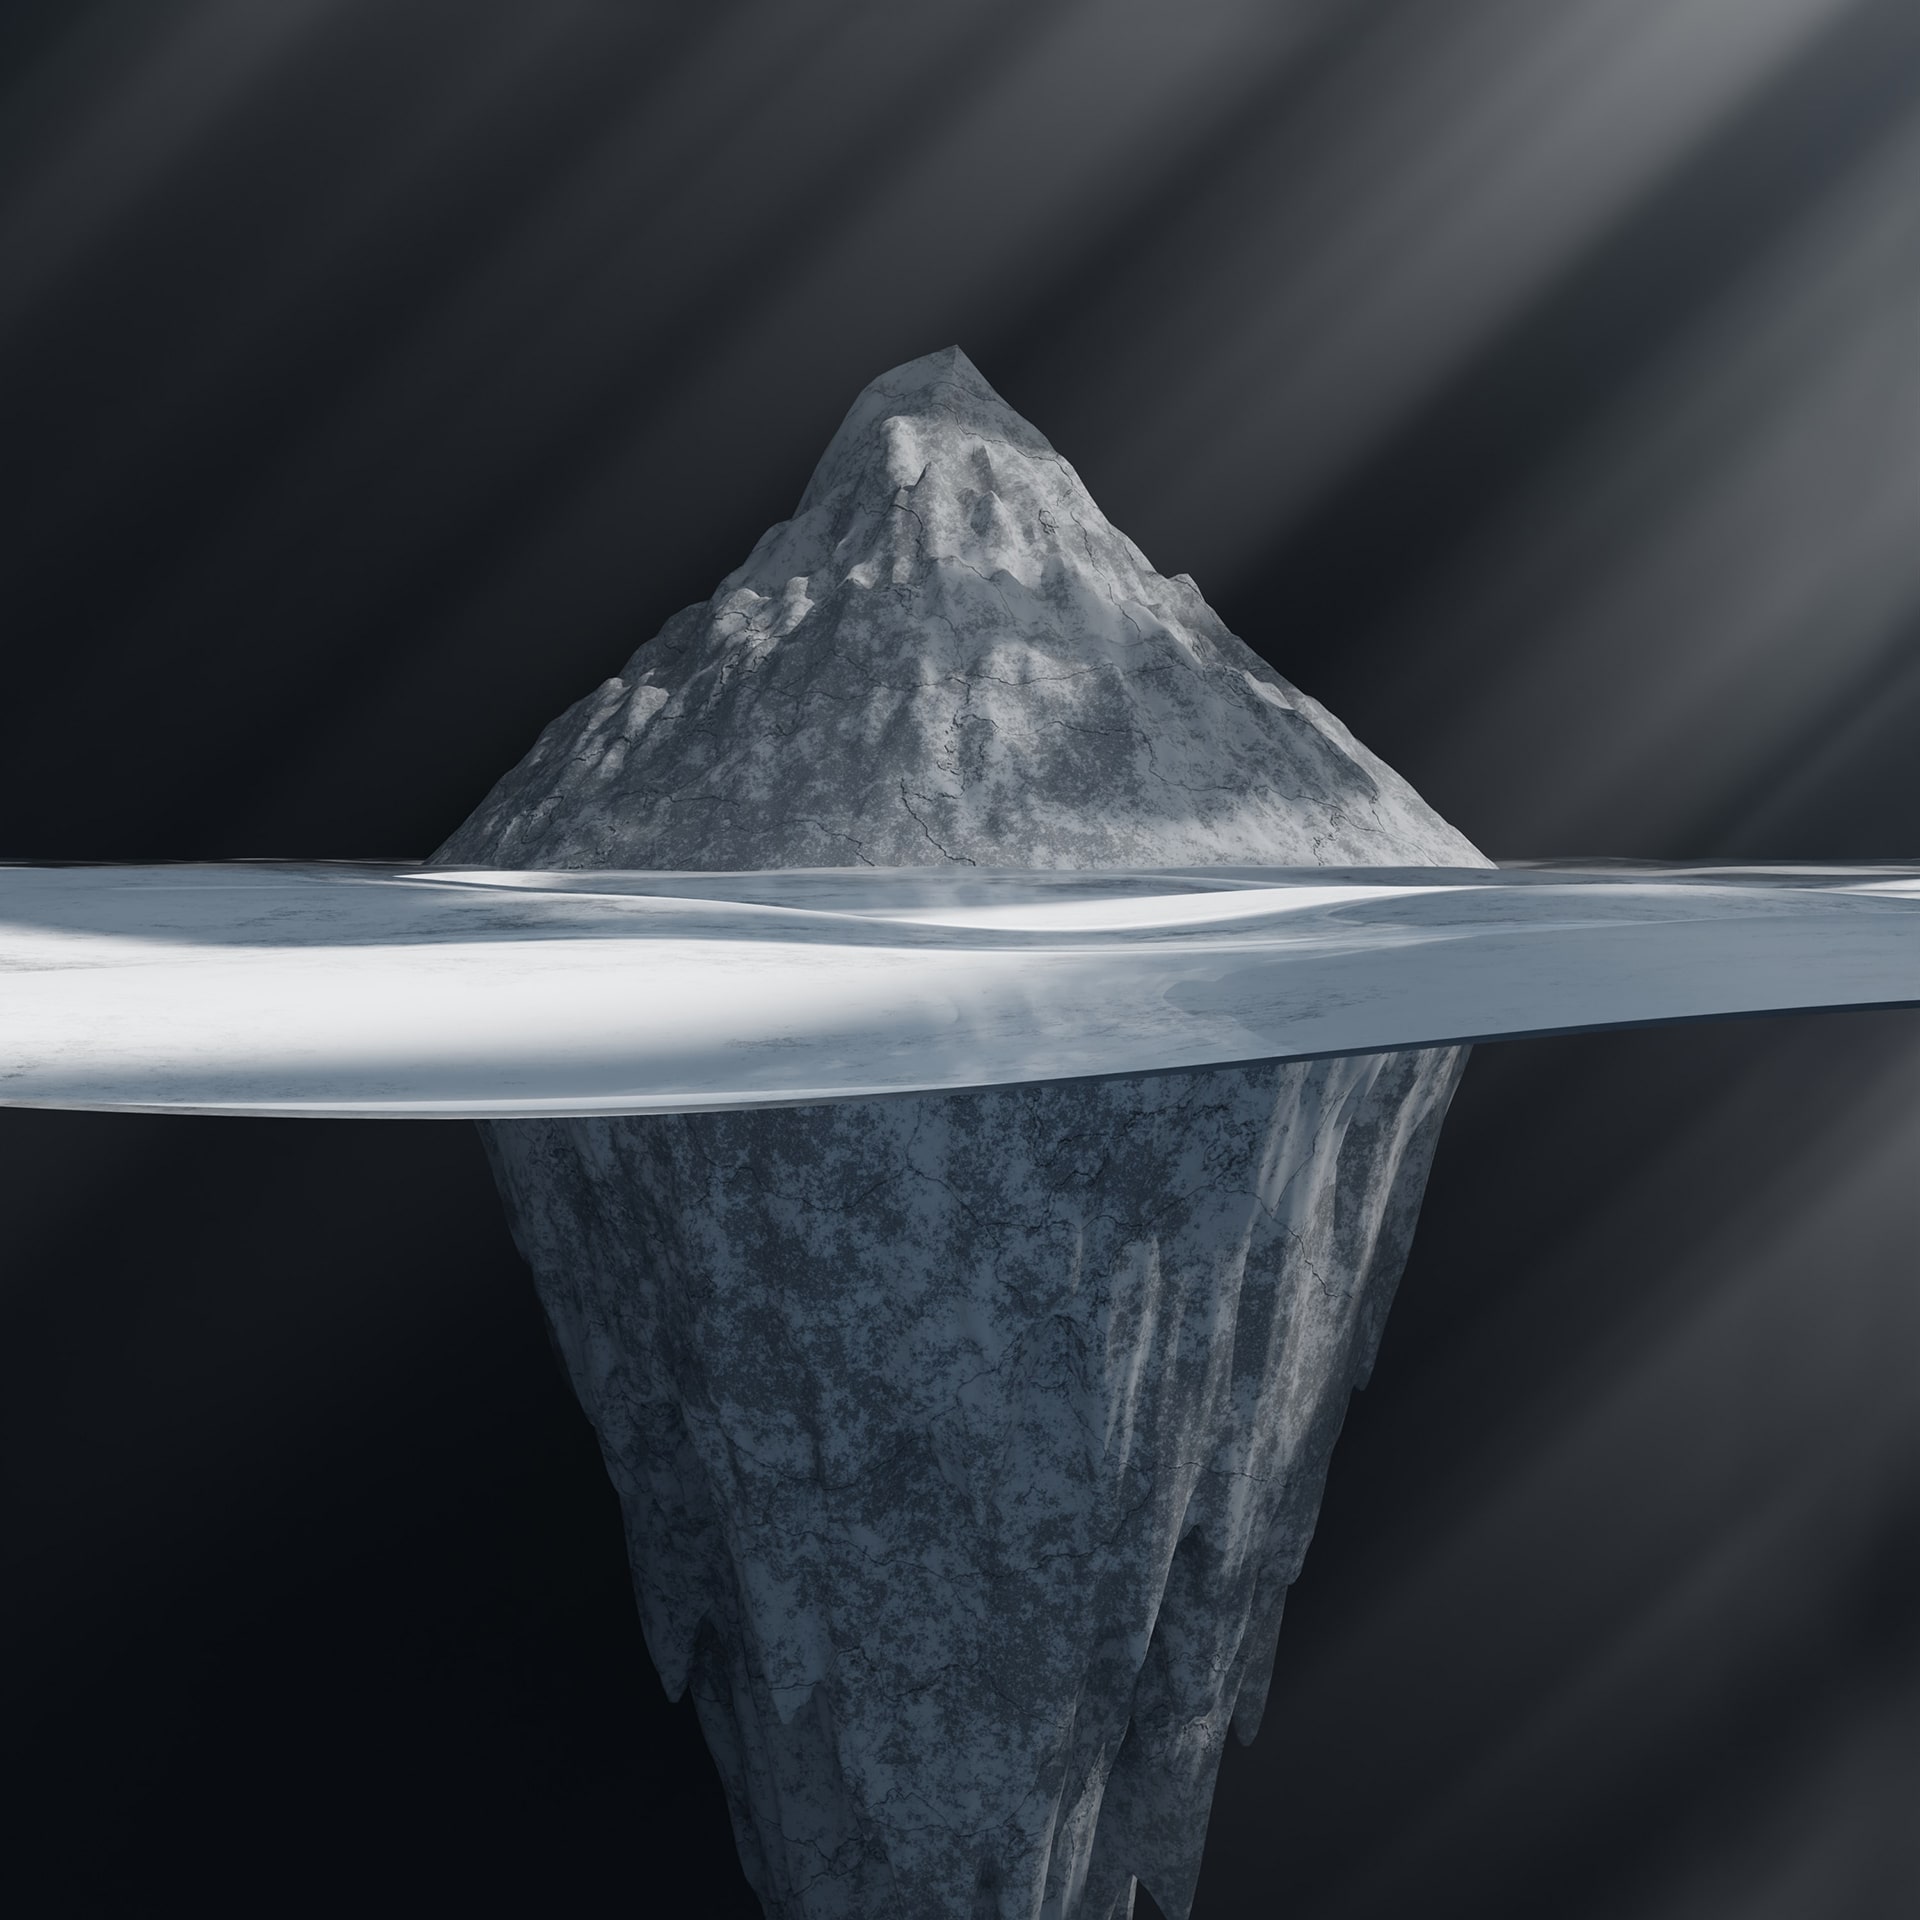 The iceberg